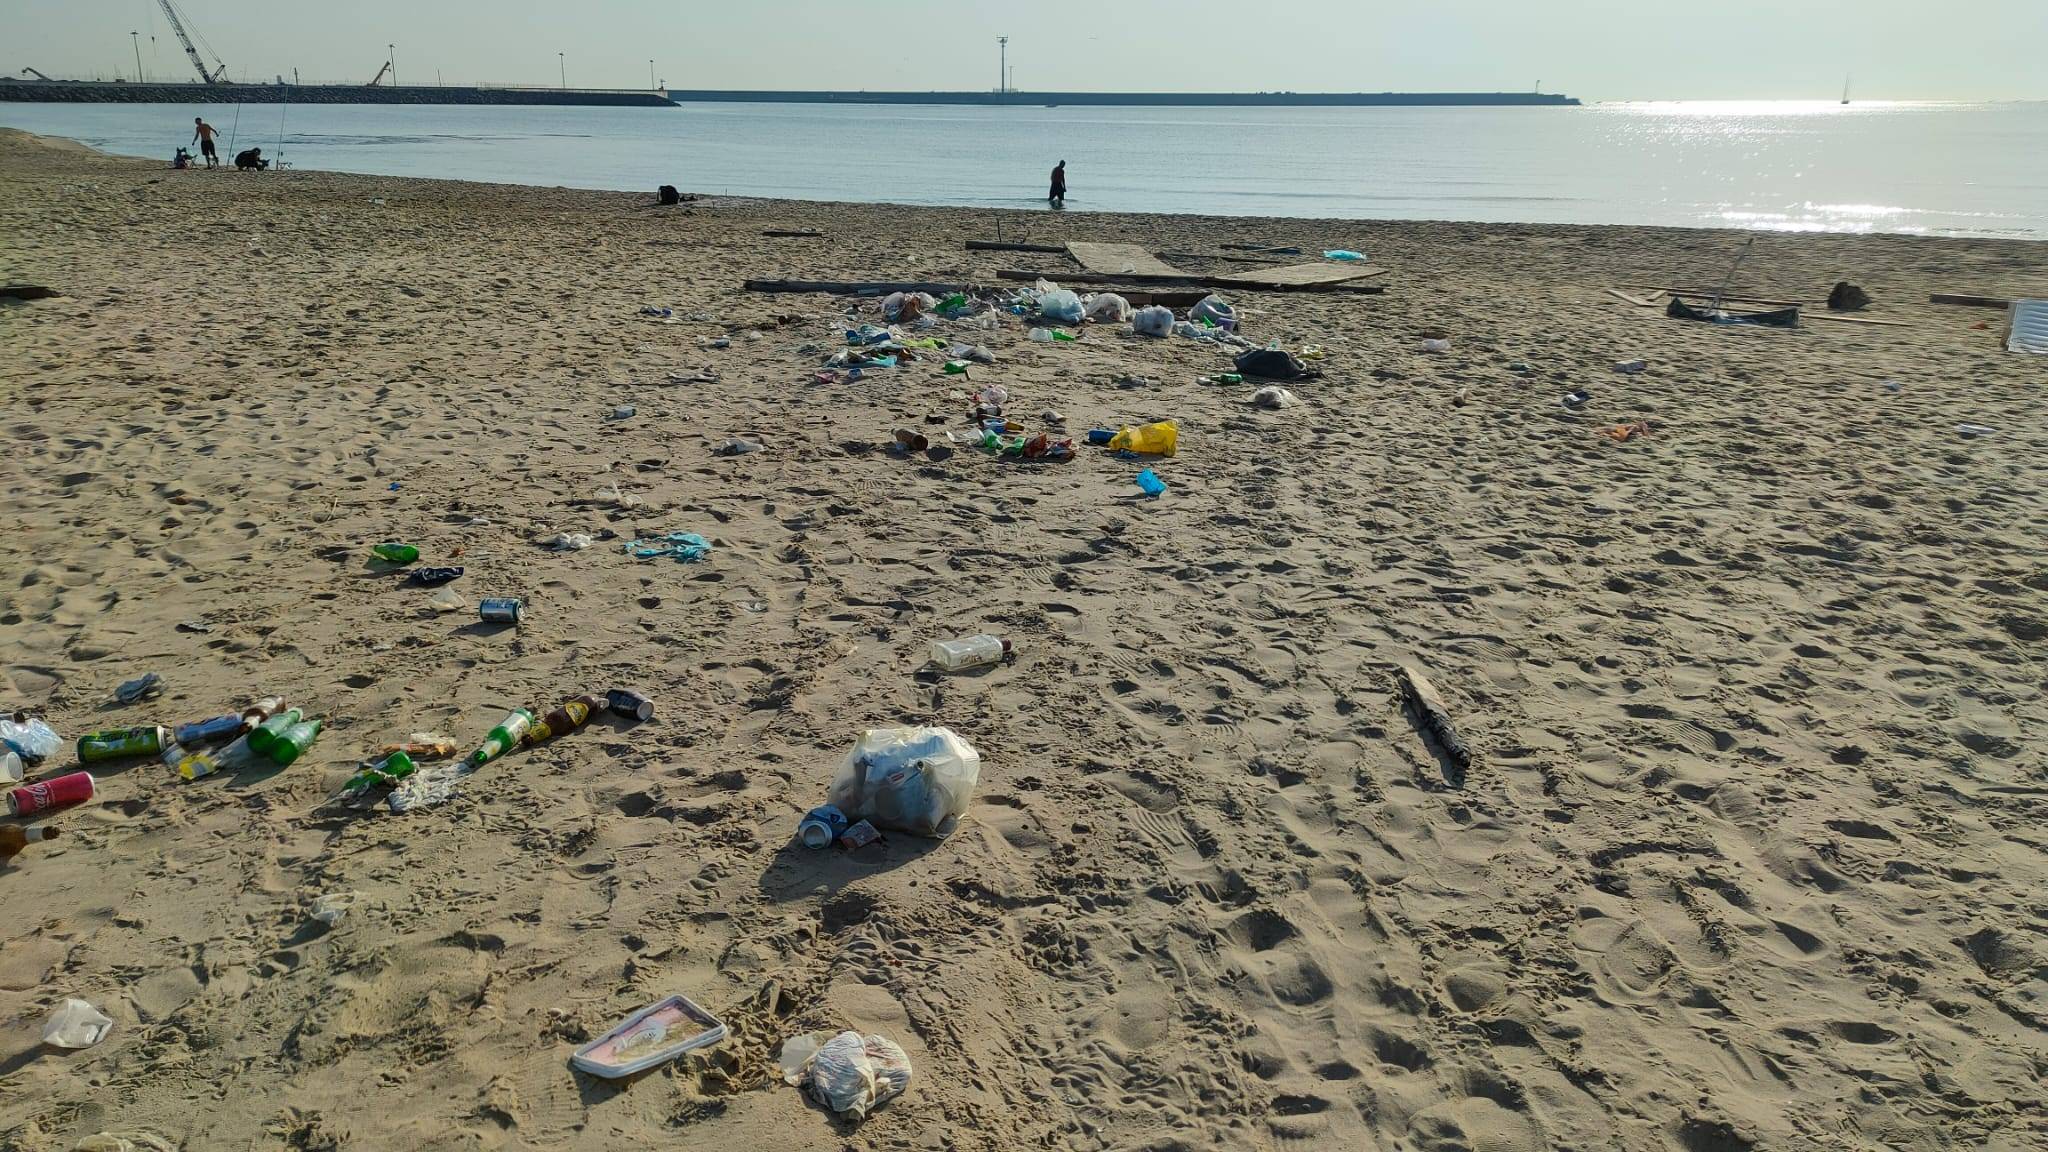 rifiuti-abbandonati-sulla-spiaggia-1.jpeg